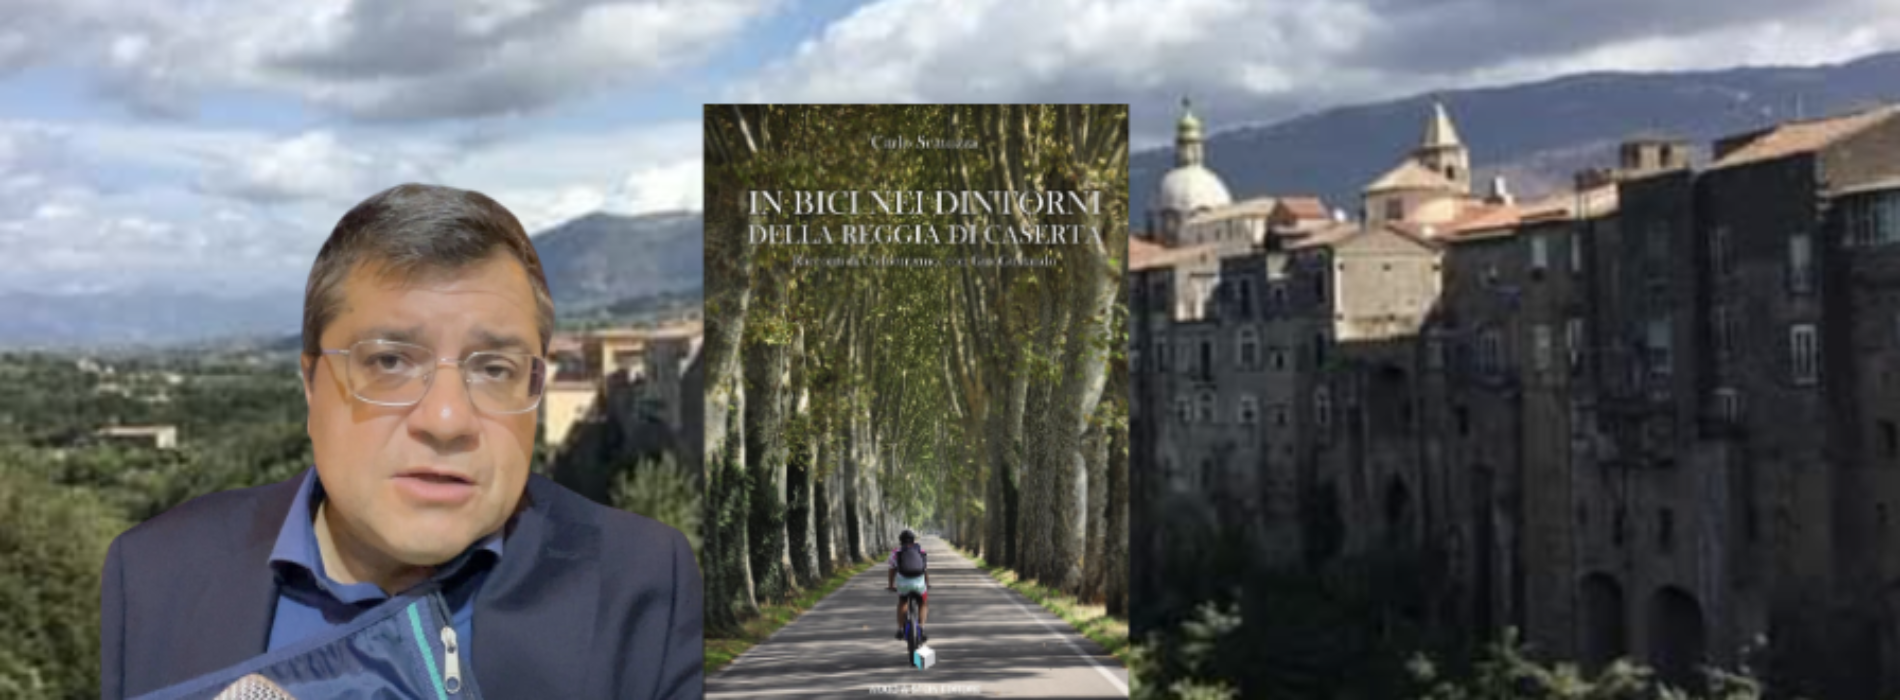 In bici nei dintorni della Reggia, il libro di Scatozza fa tappa nel Sannio